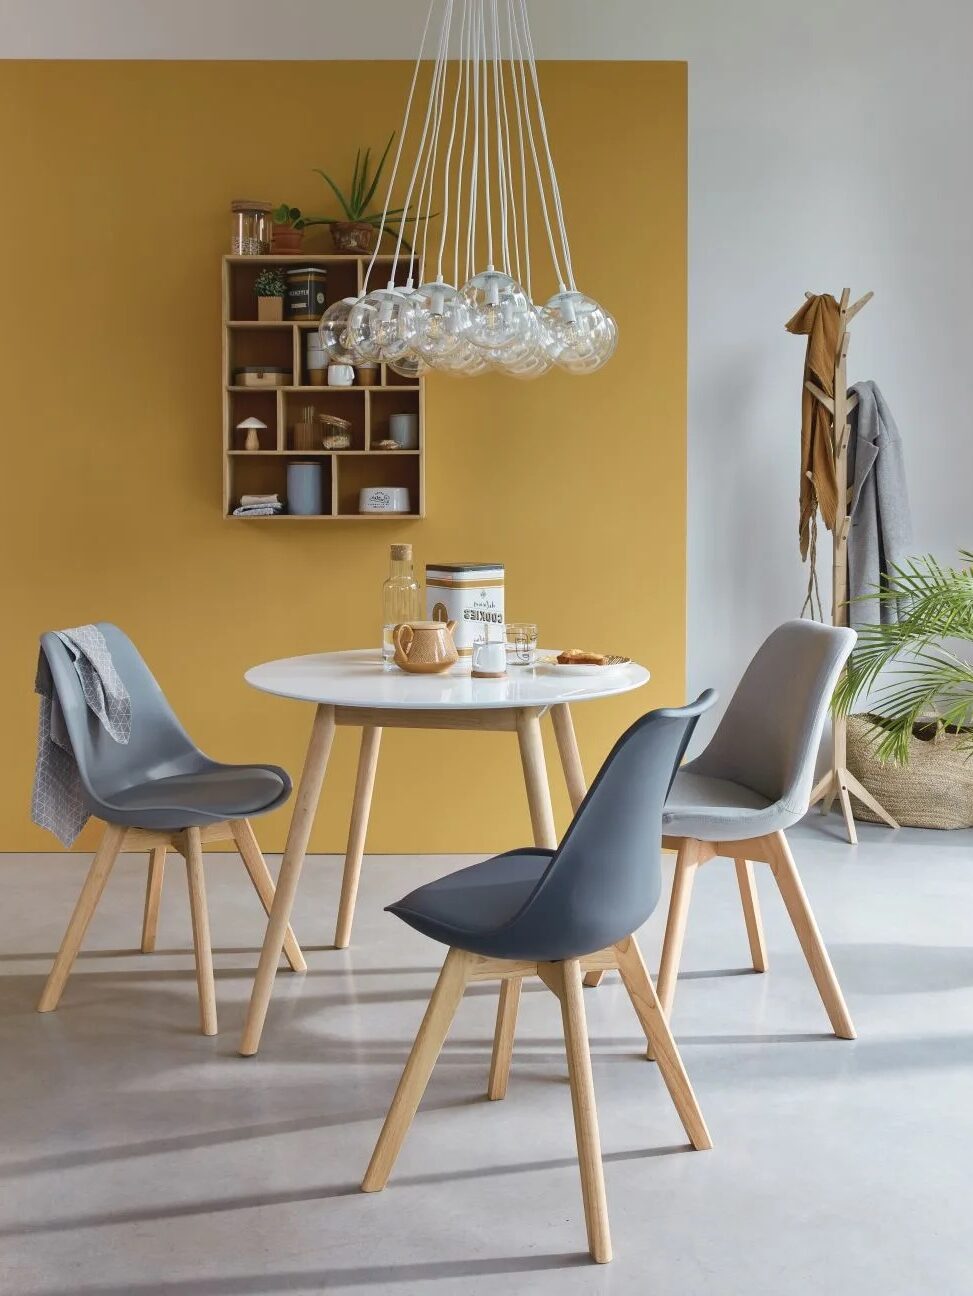 deco salon table ronde deco scandinave chaise